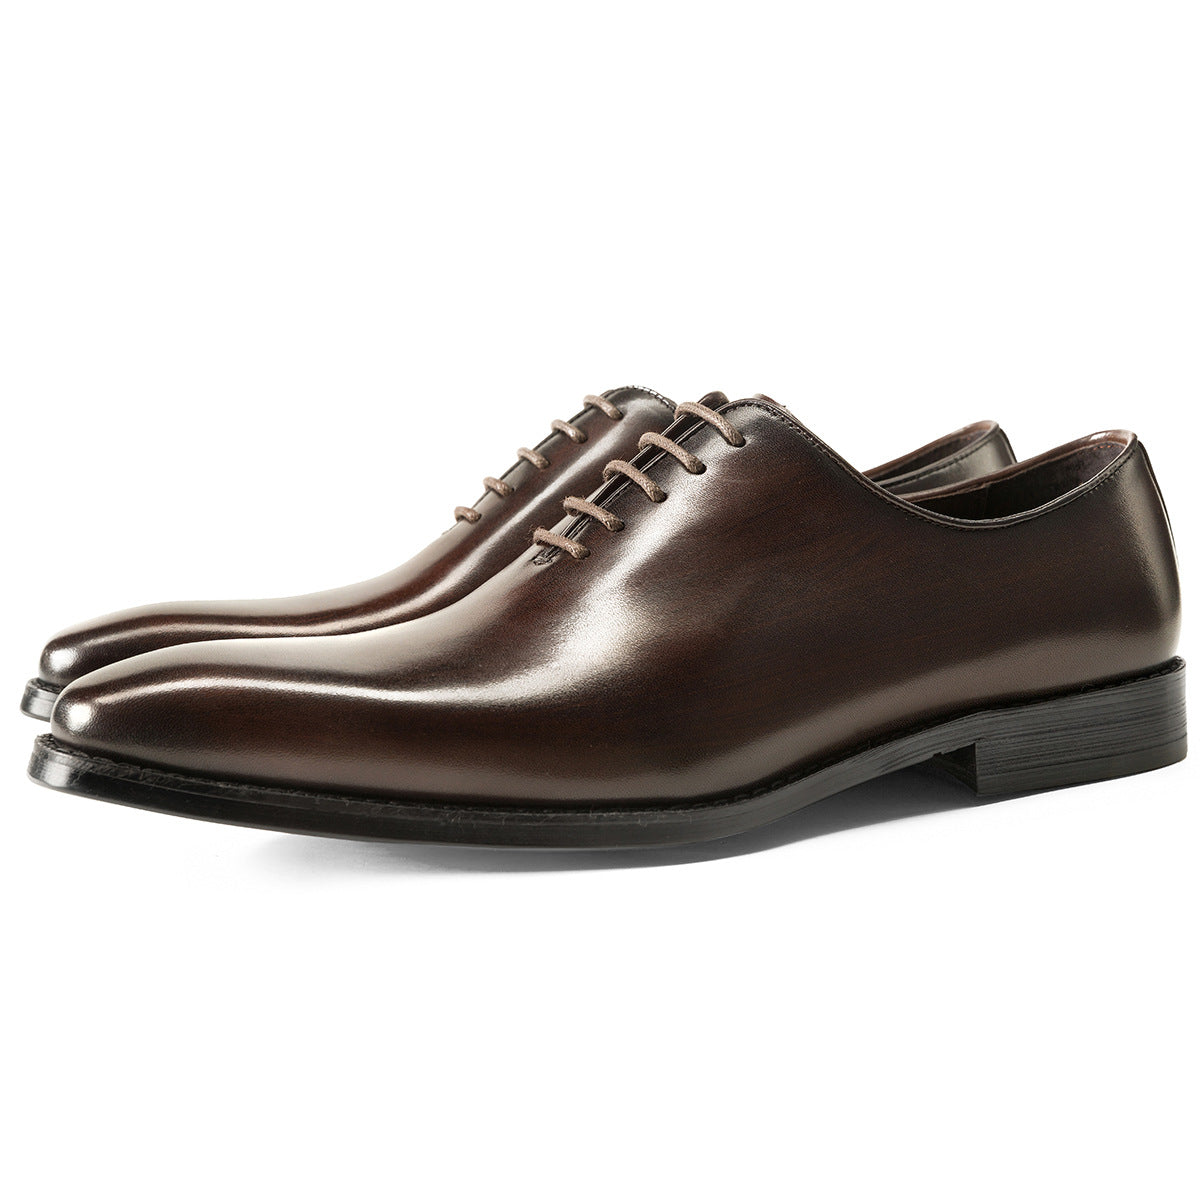 Einteilige Oxford-Schuhe für Herren – handgefertigte Business-Lederschuhe aus gebürstetem Leder